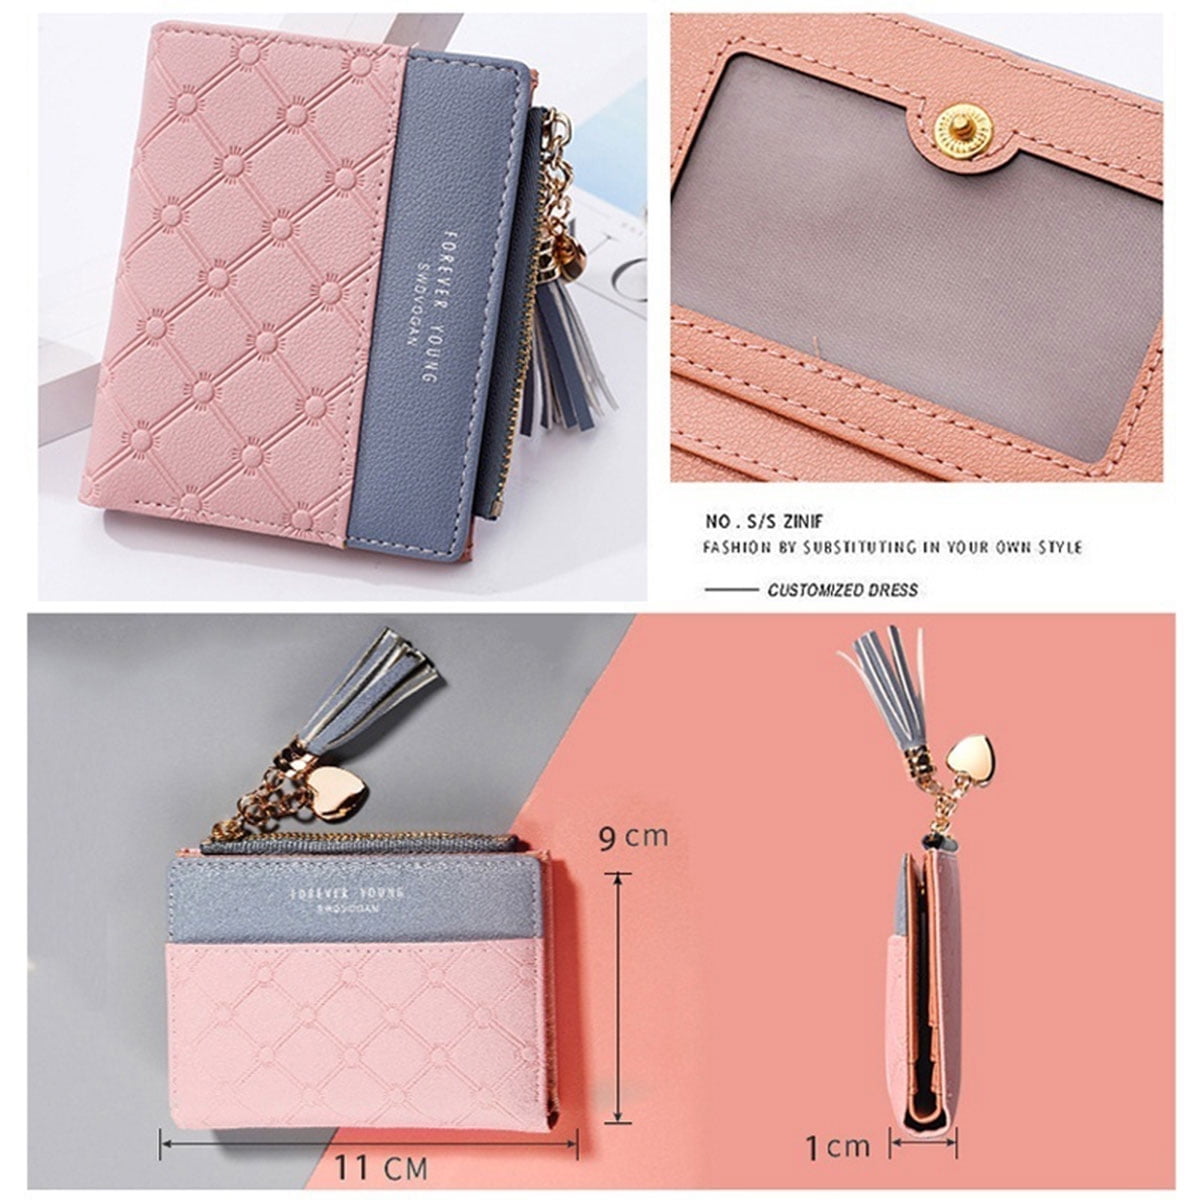 2019 Women Wallet Small Cute BYLV Wallet Women Short Leather Women  Wallets Zipper Purses Female Purse Clutch From Ltt6688, $21.52